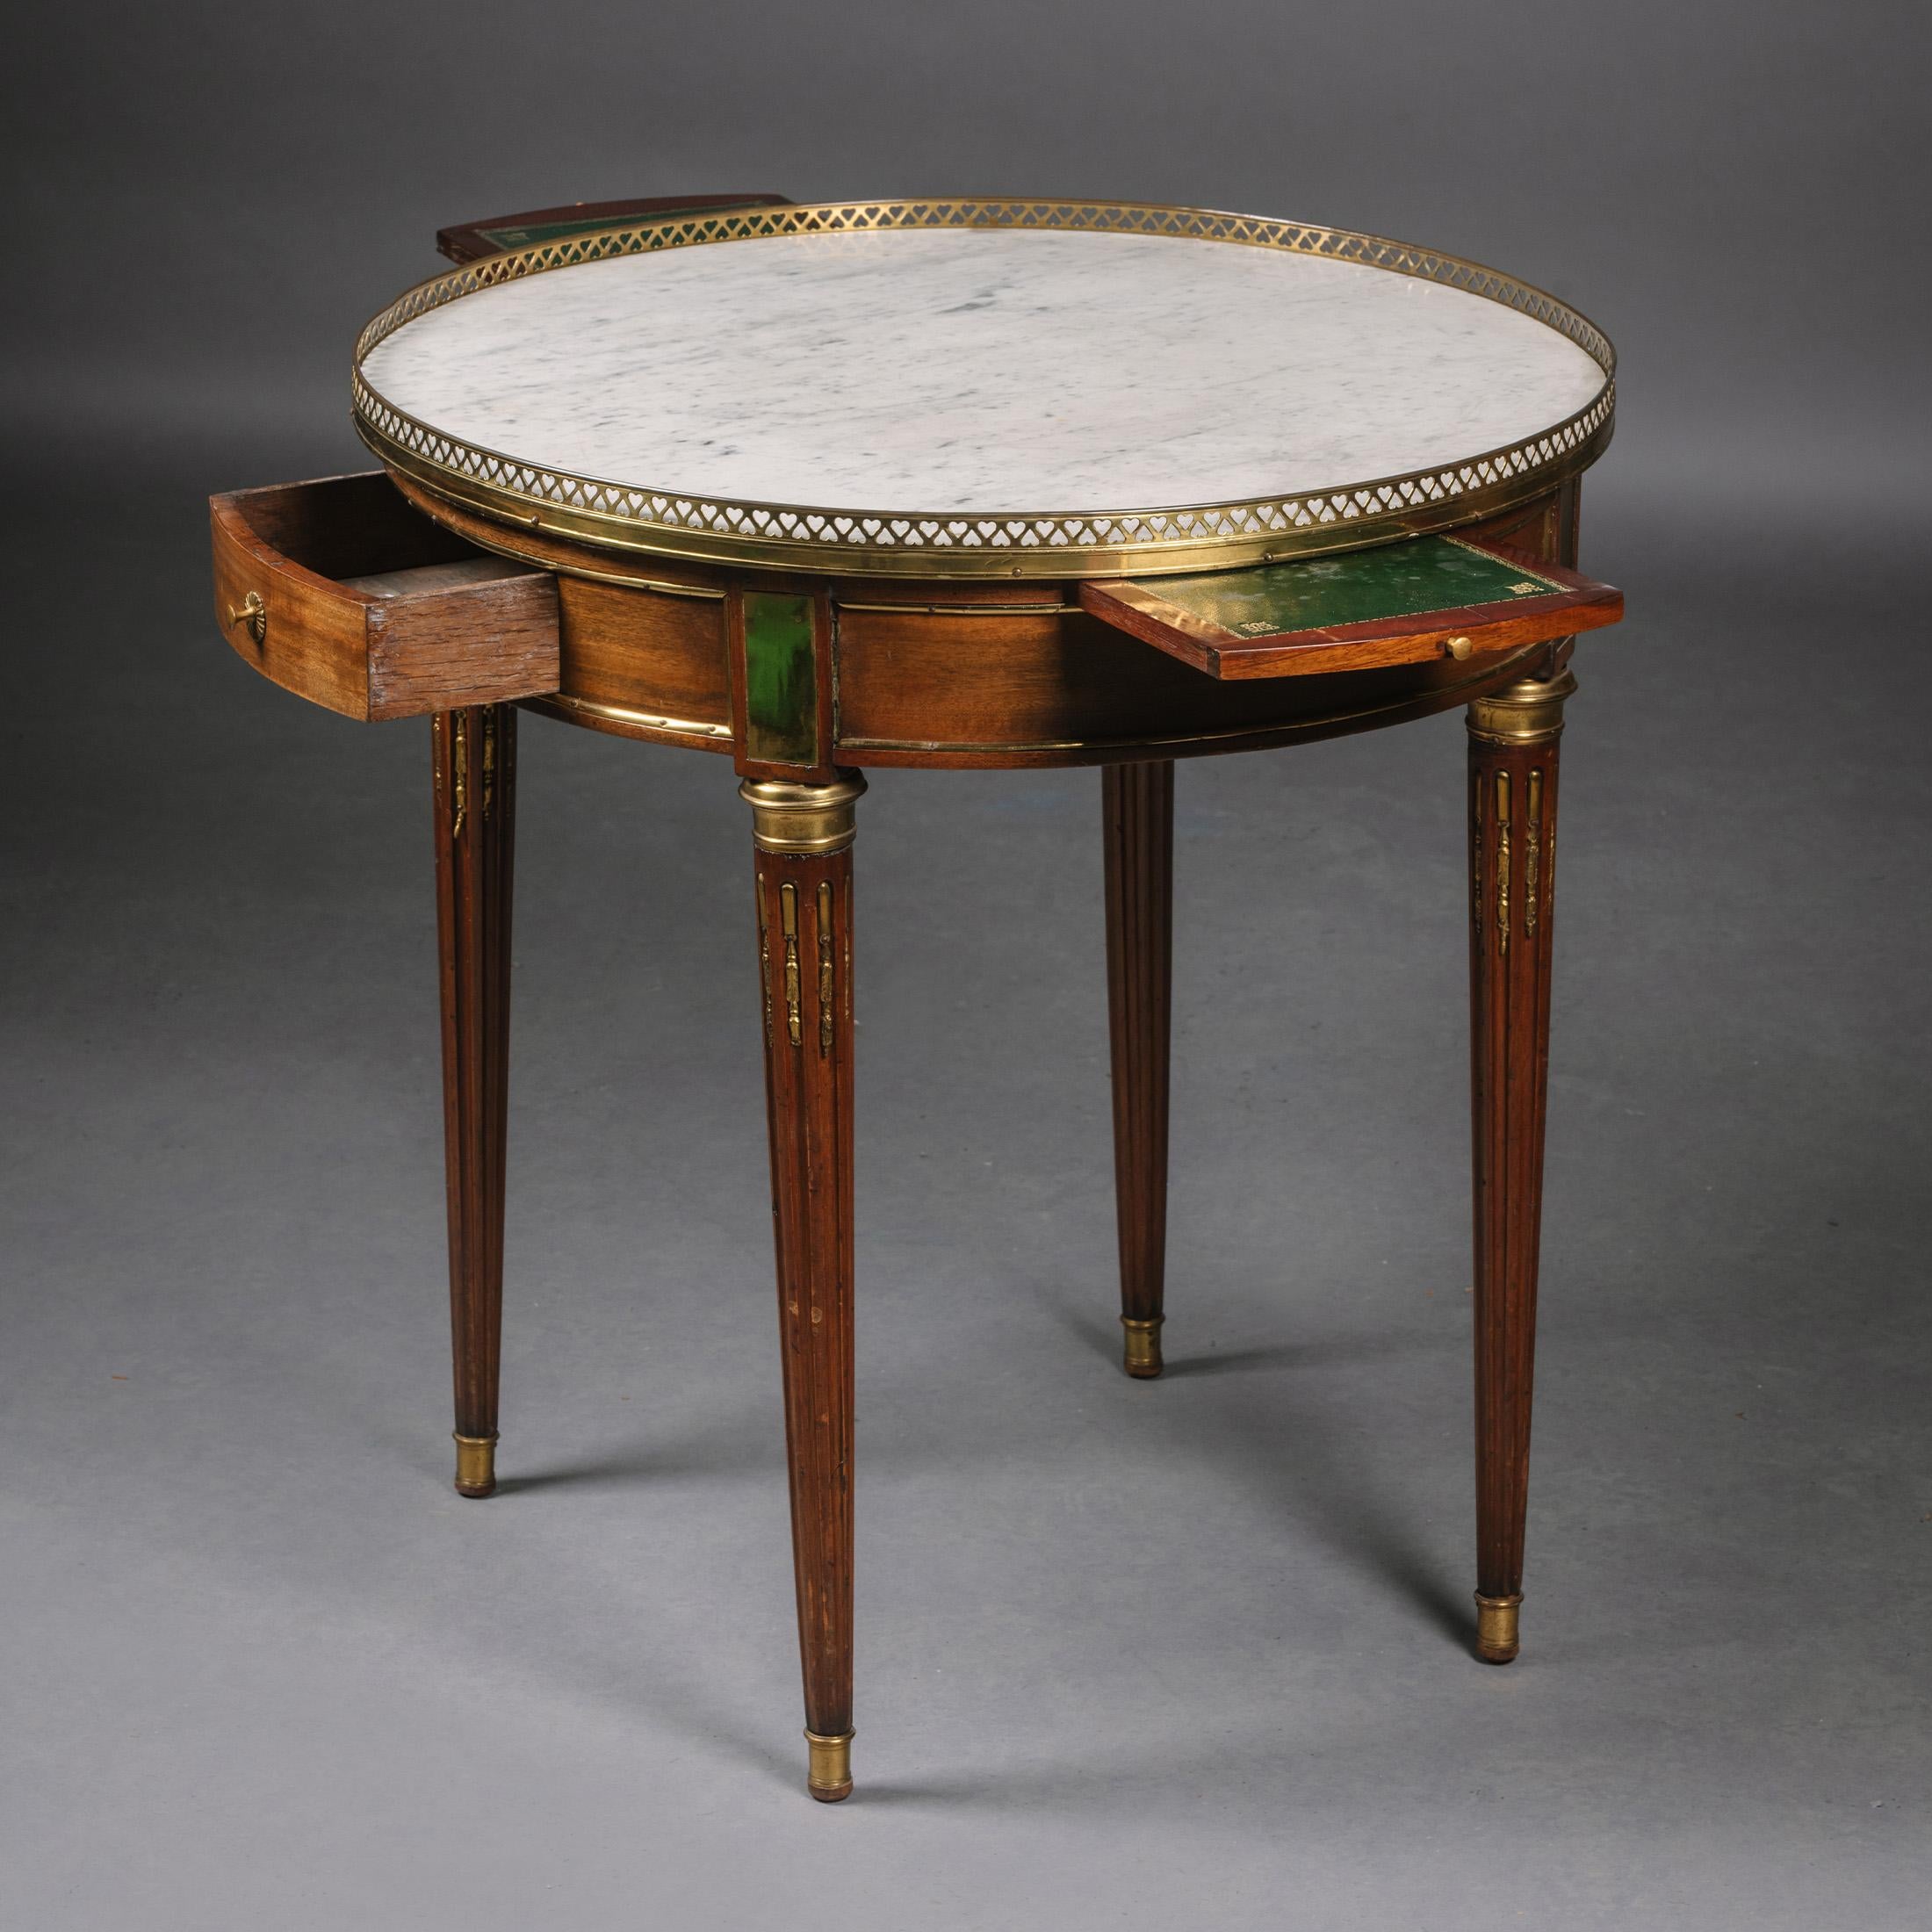 Guéridon en acajou monté en bronze doré de style Louis XVI.

Cette charmante table d'appoint est d'une taille particulièrement utile. Il présente un plateau en marbre blanc avec une galerie en laiton percée de trous en forme de cœur, au-dessus